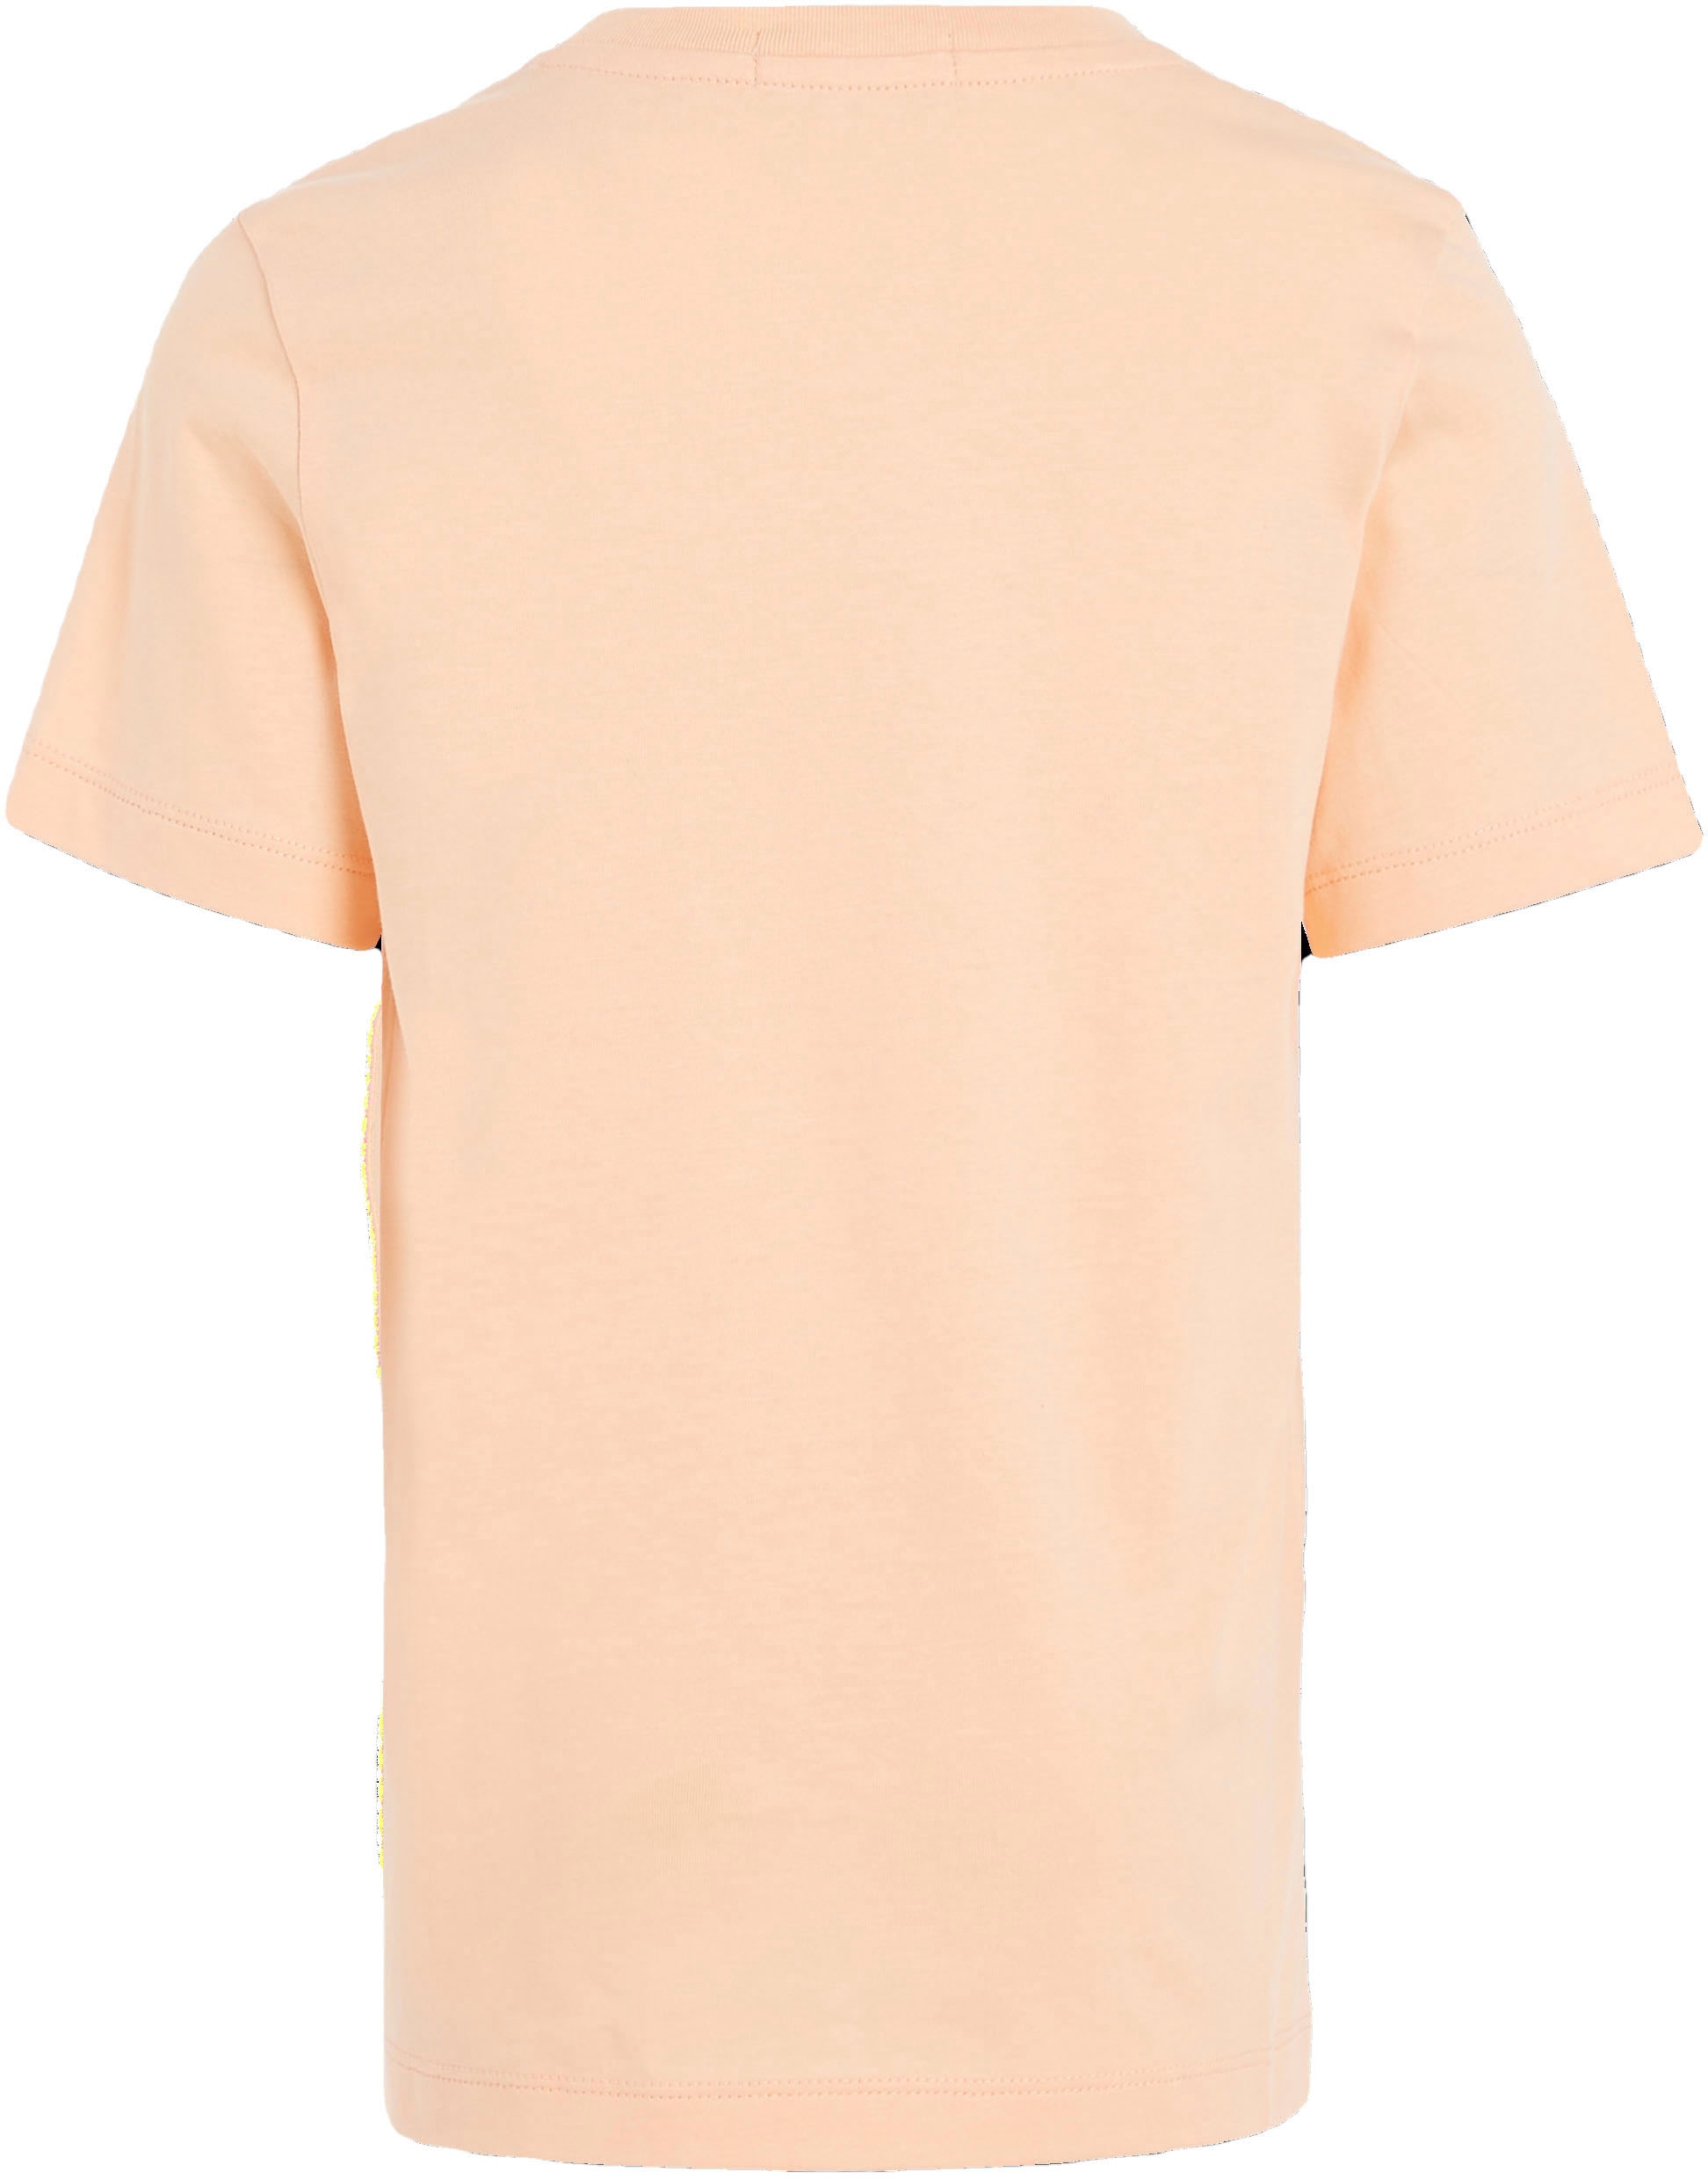 Calvin Klein Jeans T-Shirt »MONOGRAM LOGO T-SHIRT«, Kinder Kids Junior  MiniMe,für Mädchen und Jungen online kaufen